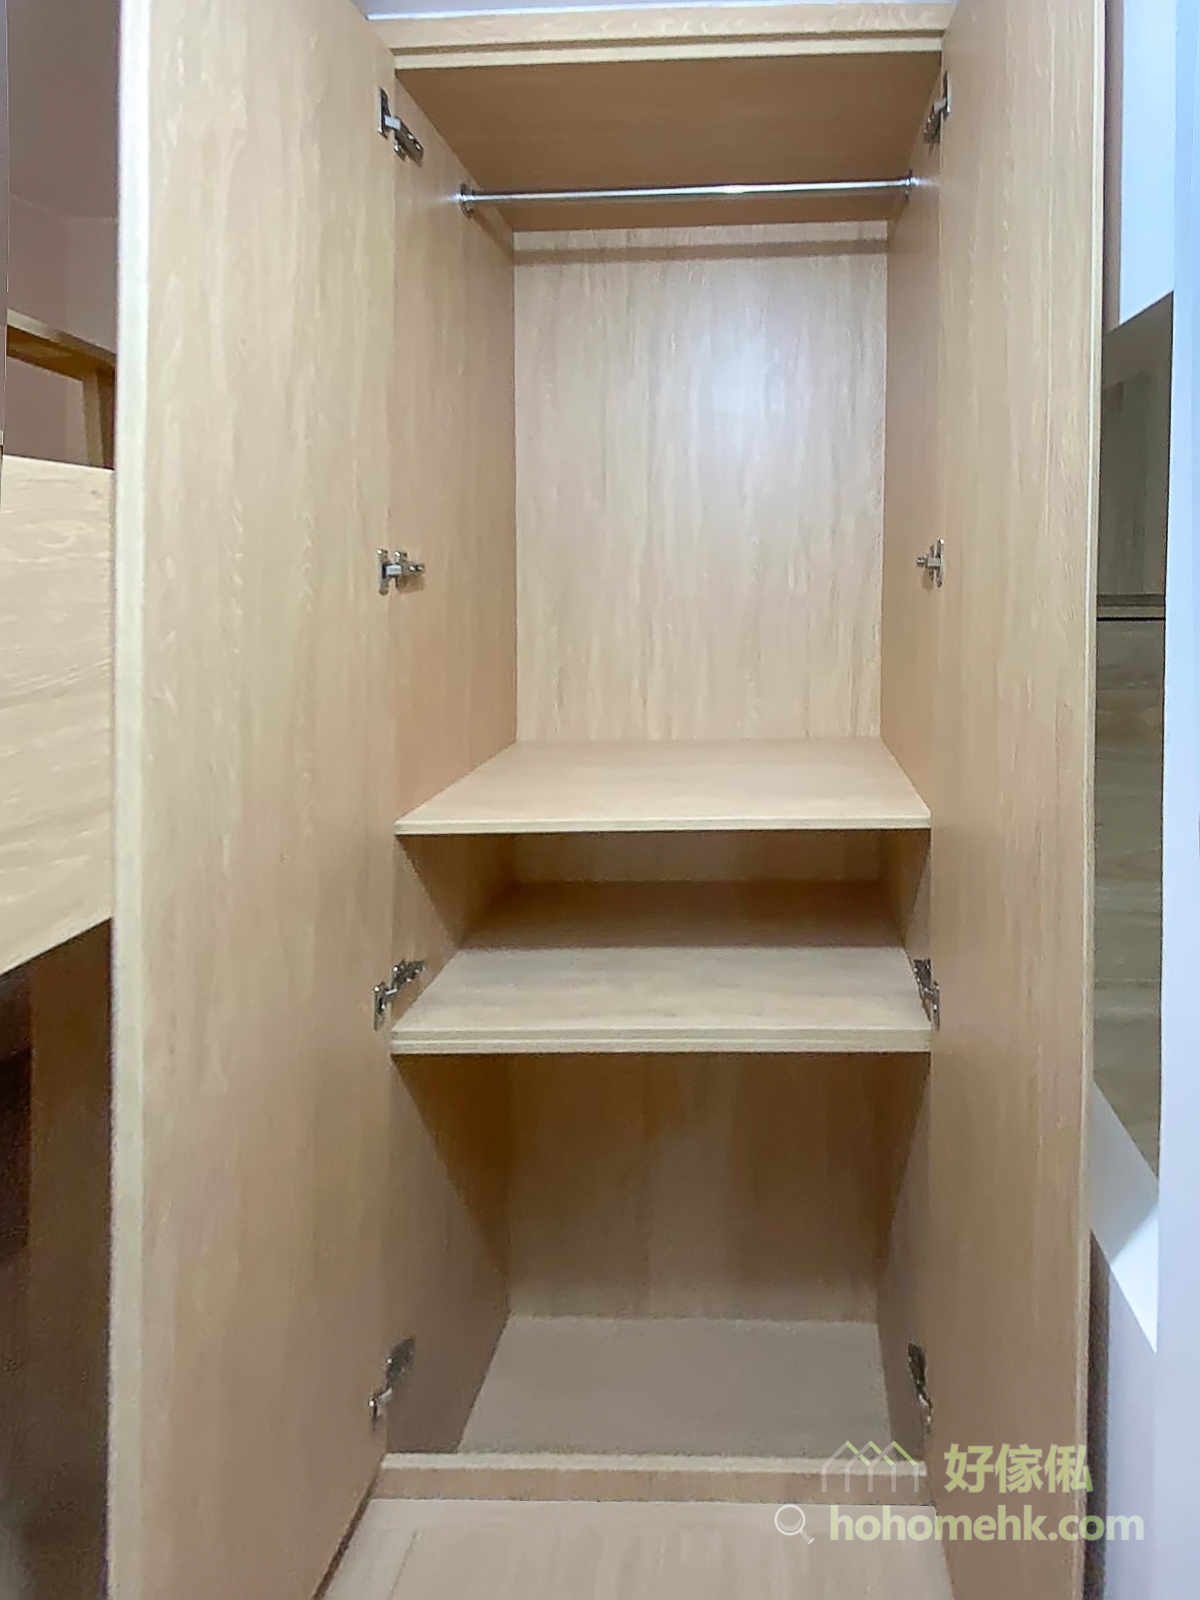 用盡隔間內的所有空間來進行收納，包括全房的地板櫃和高衣櫃，而且採用「上床下桌」的設計，連垂直空間都完美運用